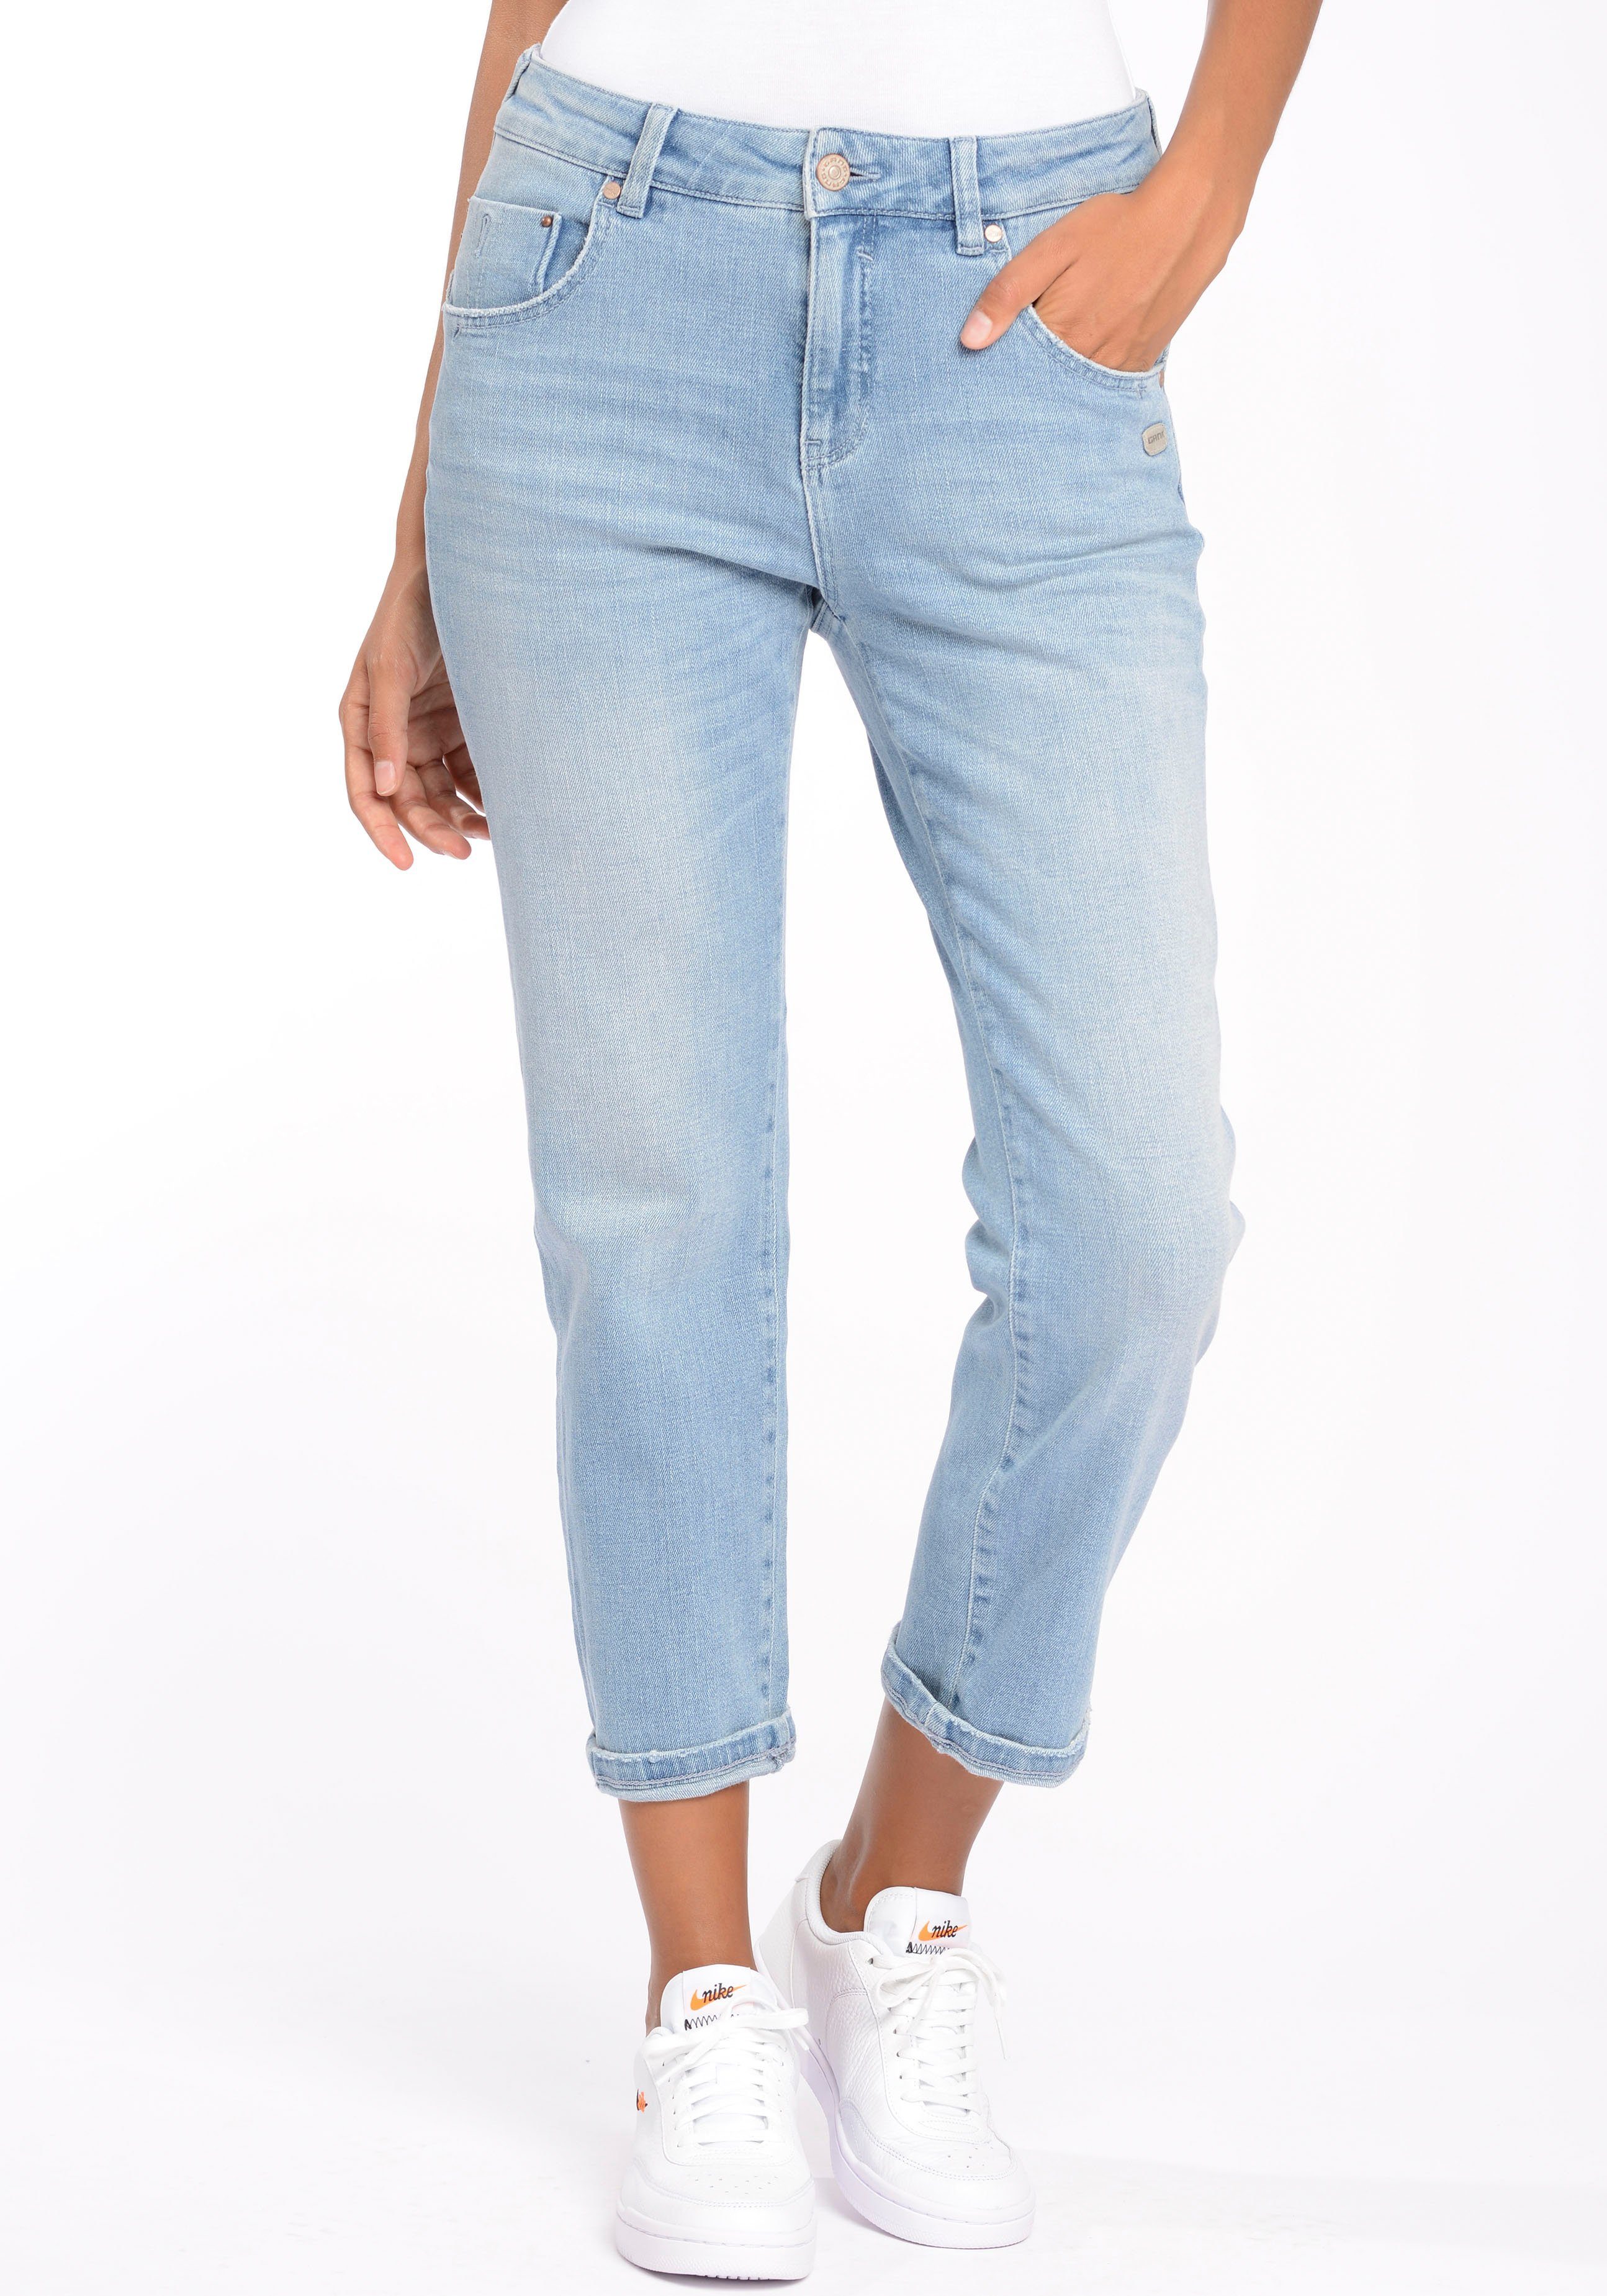 Günstige GANG Jeans für Damen kaufen » GANG Jeans SALE | OTTO